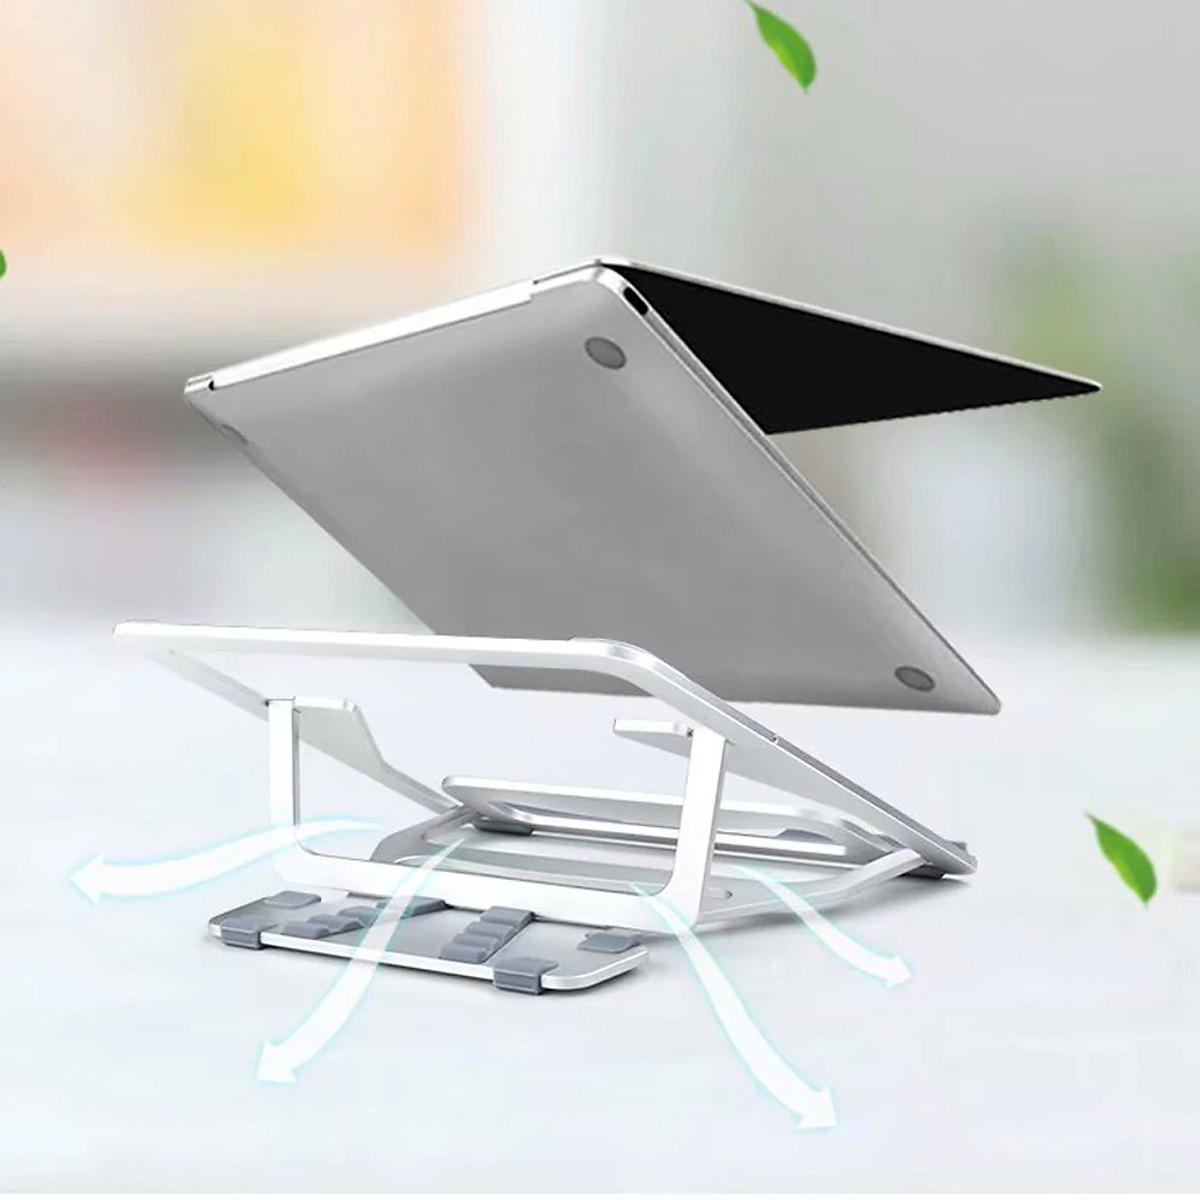 Giá đỡ tản nhiệt cho Macbook / Laptop từ 11 inch đến 17.3 inch hiệu Wiwu S100